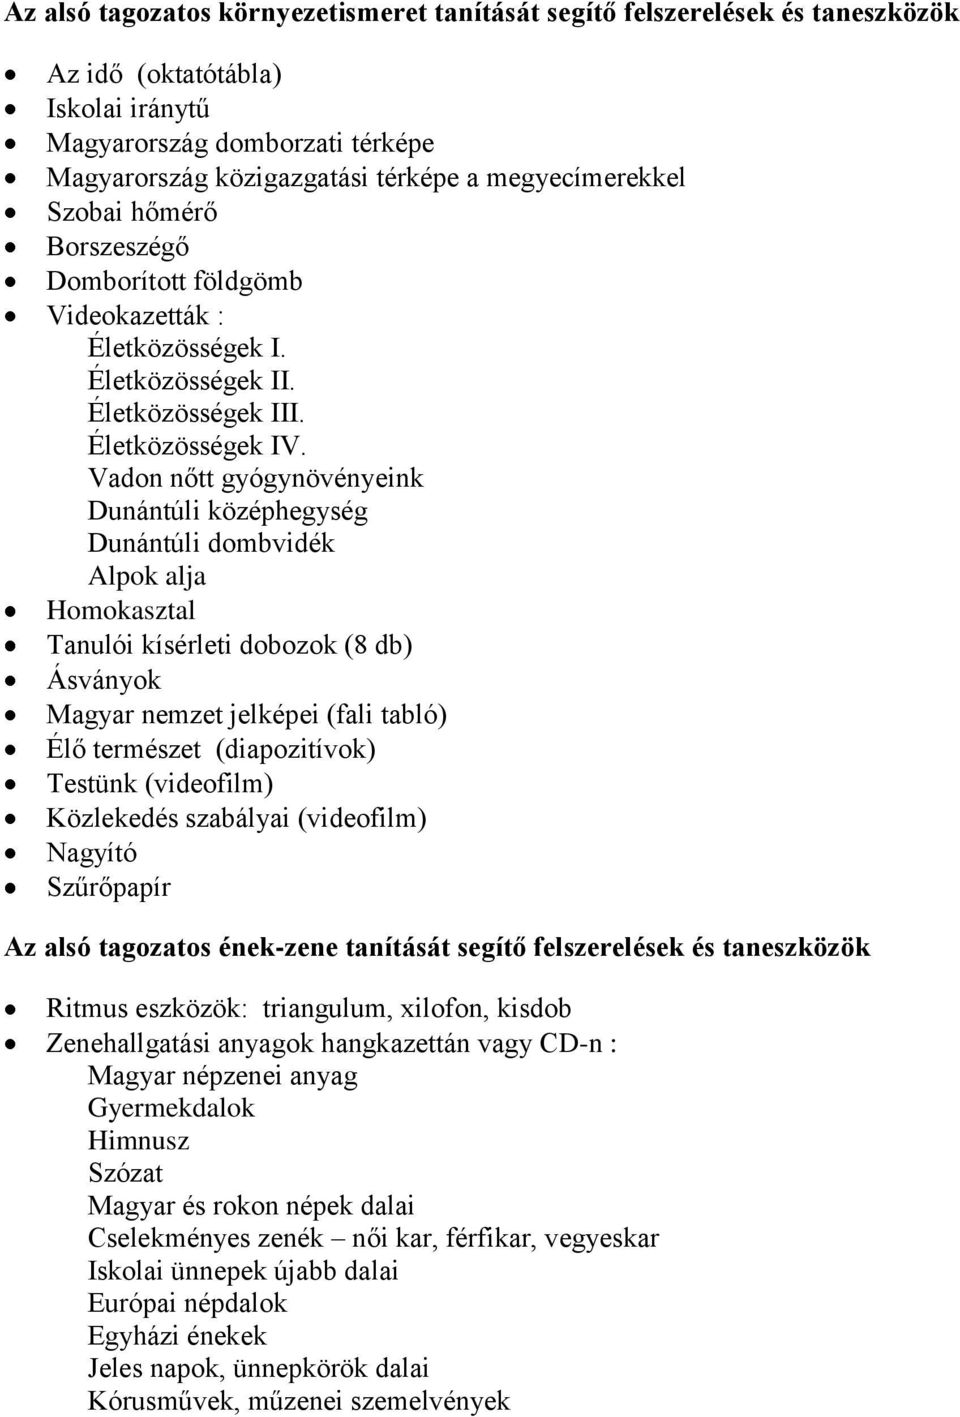 Vadon nőtt gyógynövényeink Dunántúli középhegység Dunántúli dombvidék Alpok alja Homokasztal Tanulói kísérleti dobozok (8 db) Ásványok Magyar nemzet jelképei (fali tabló) Élő természet (diapozitívok)